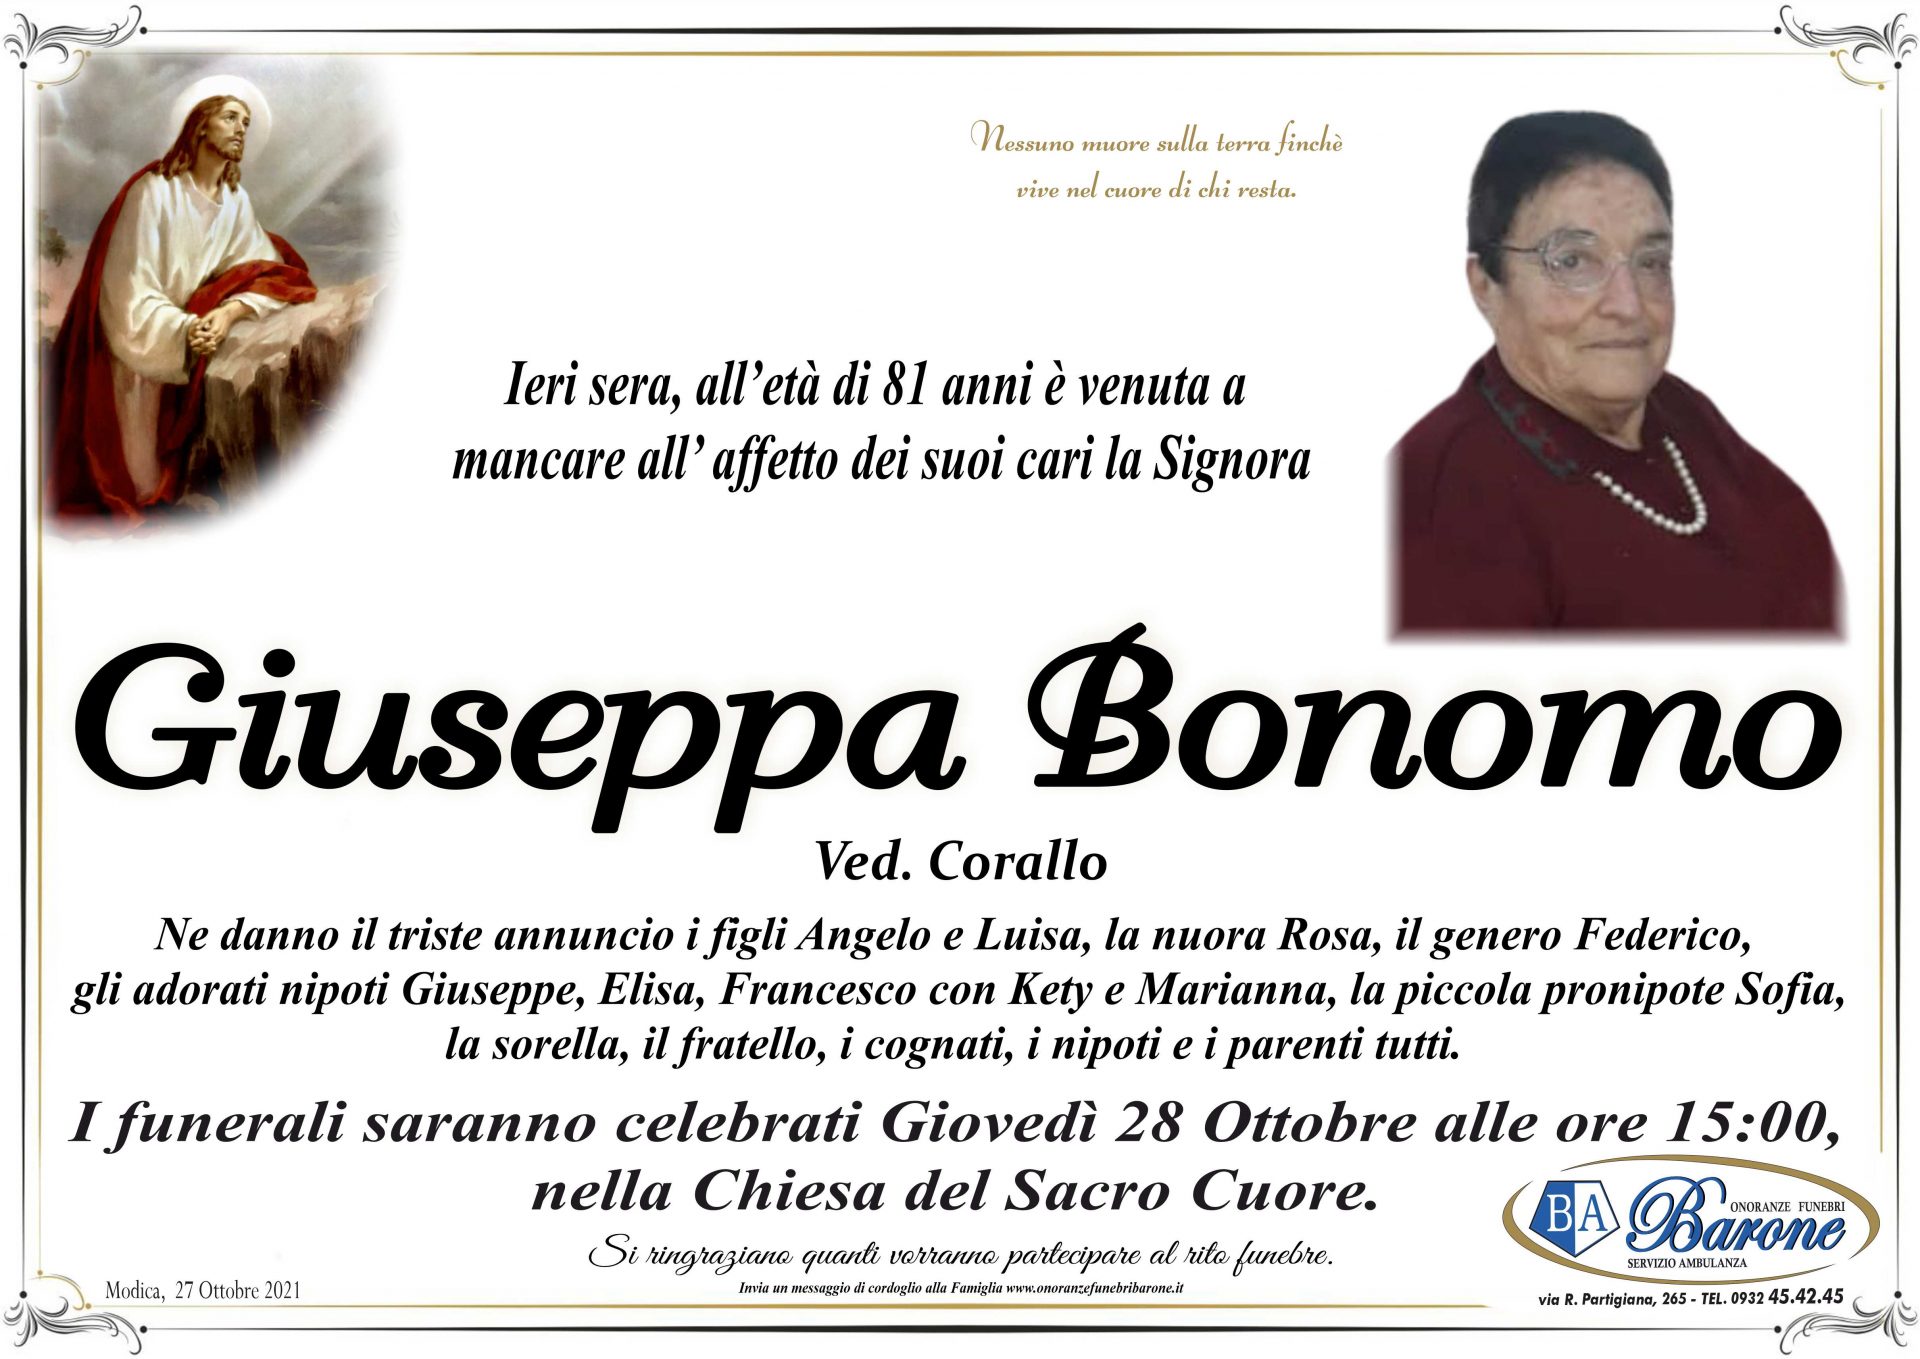 Giuseppa Bonomo